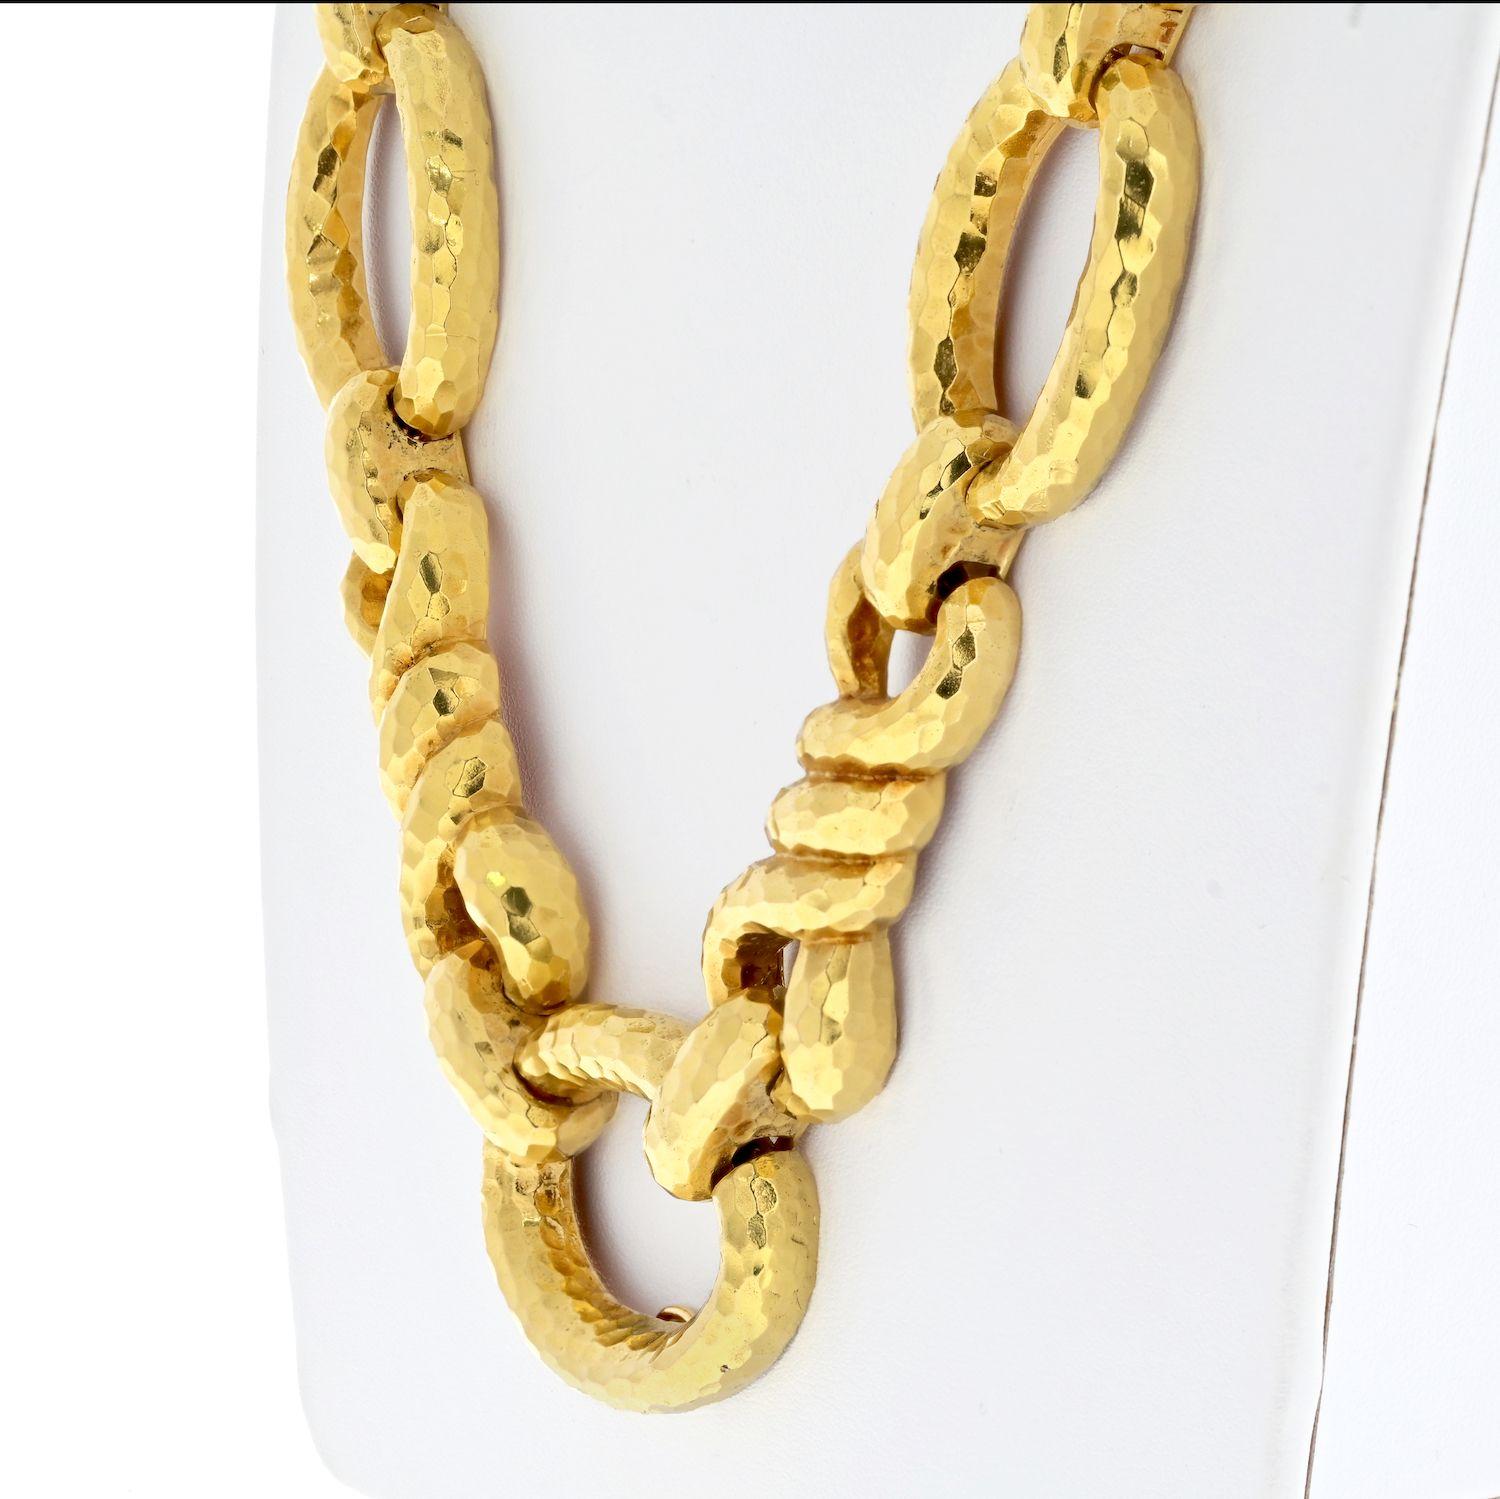 Voici un remarquable bijou de l'estimé designer David Webb, le collier à maillons en or jaune 18 carats. Ce collier dégage un mélange captivant d'élégance et de style contemporain, ce qui en fait une véritable pièce d'apparat. Réalisé en or jaune 18